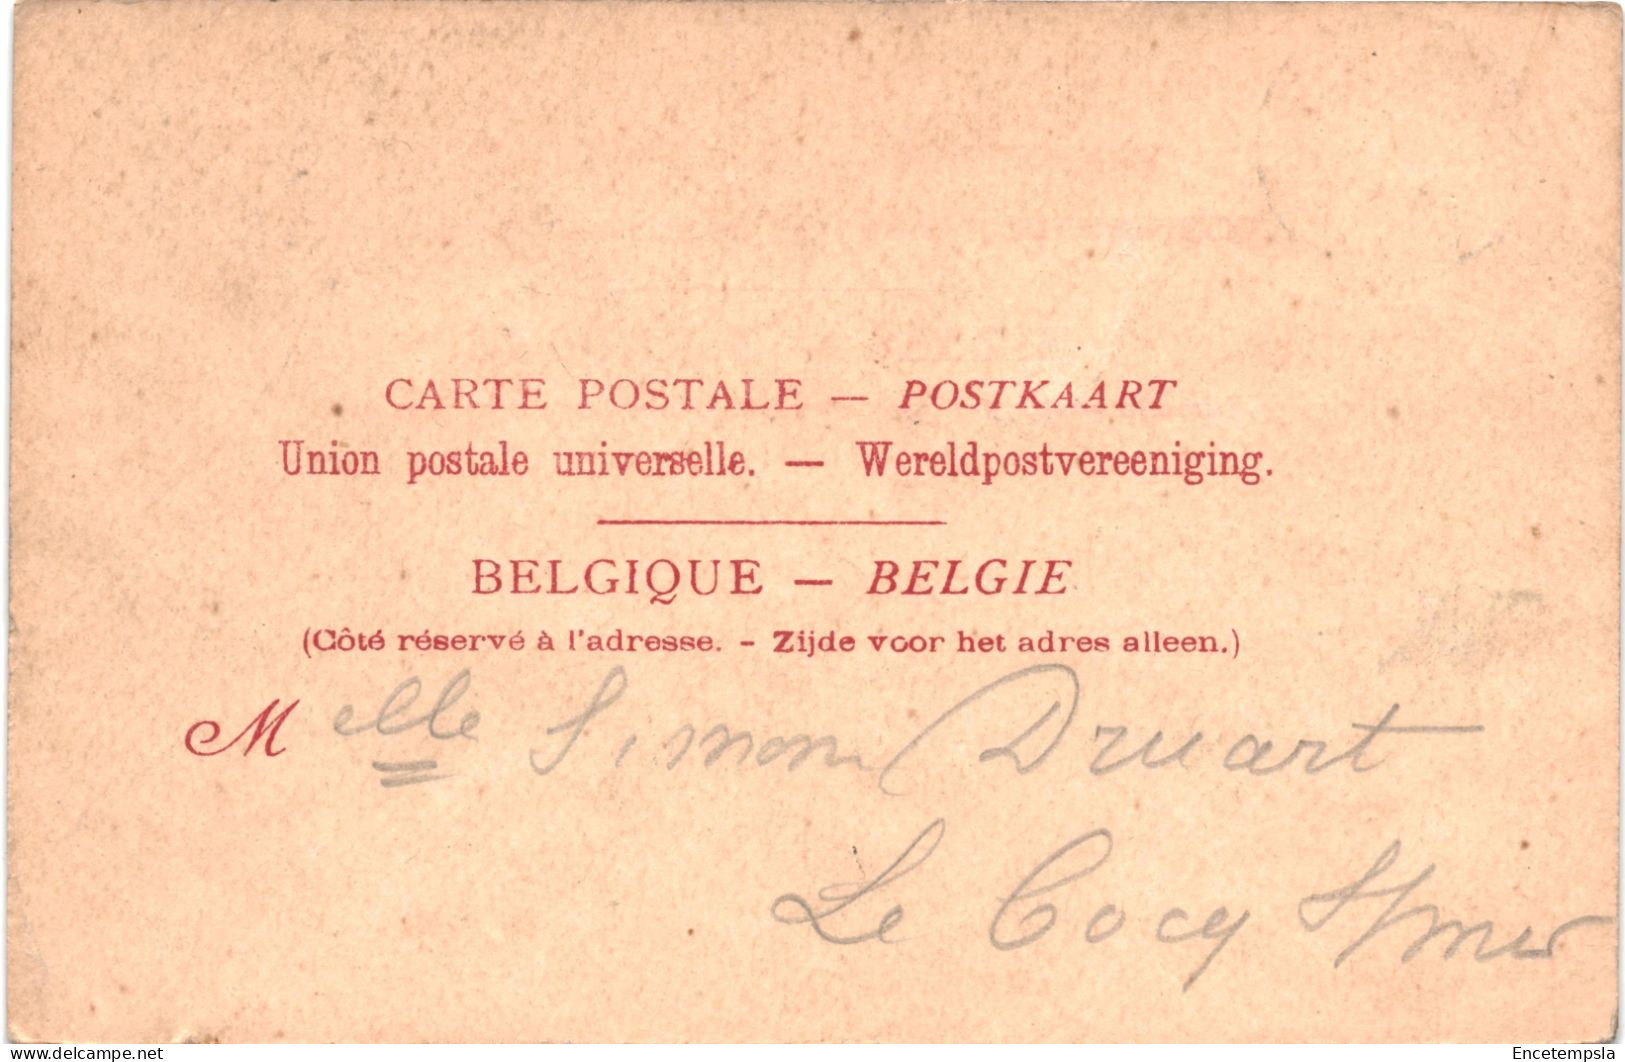 CPA Carte Postale Belgique Thourout  Pensionnat Saint Joseph Début 1900 VM76975ok - Torhout